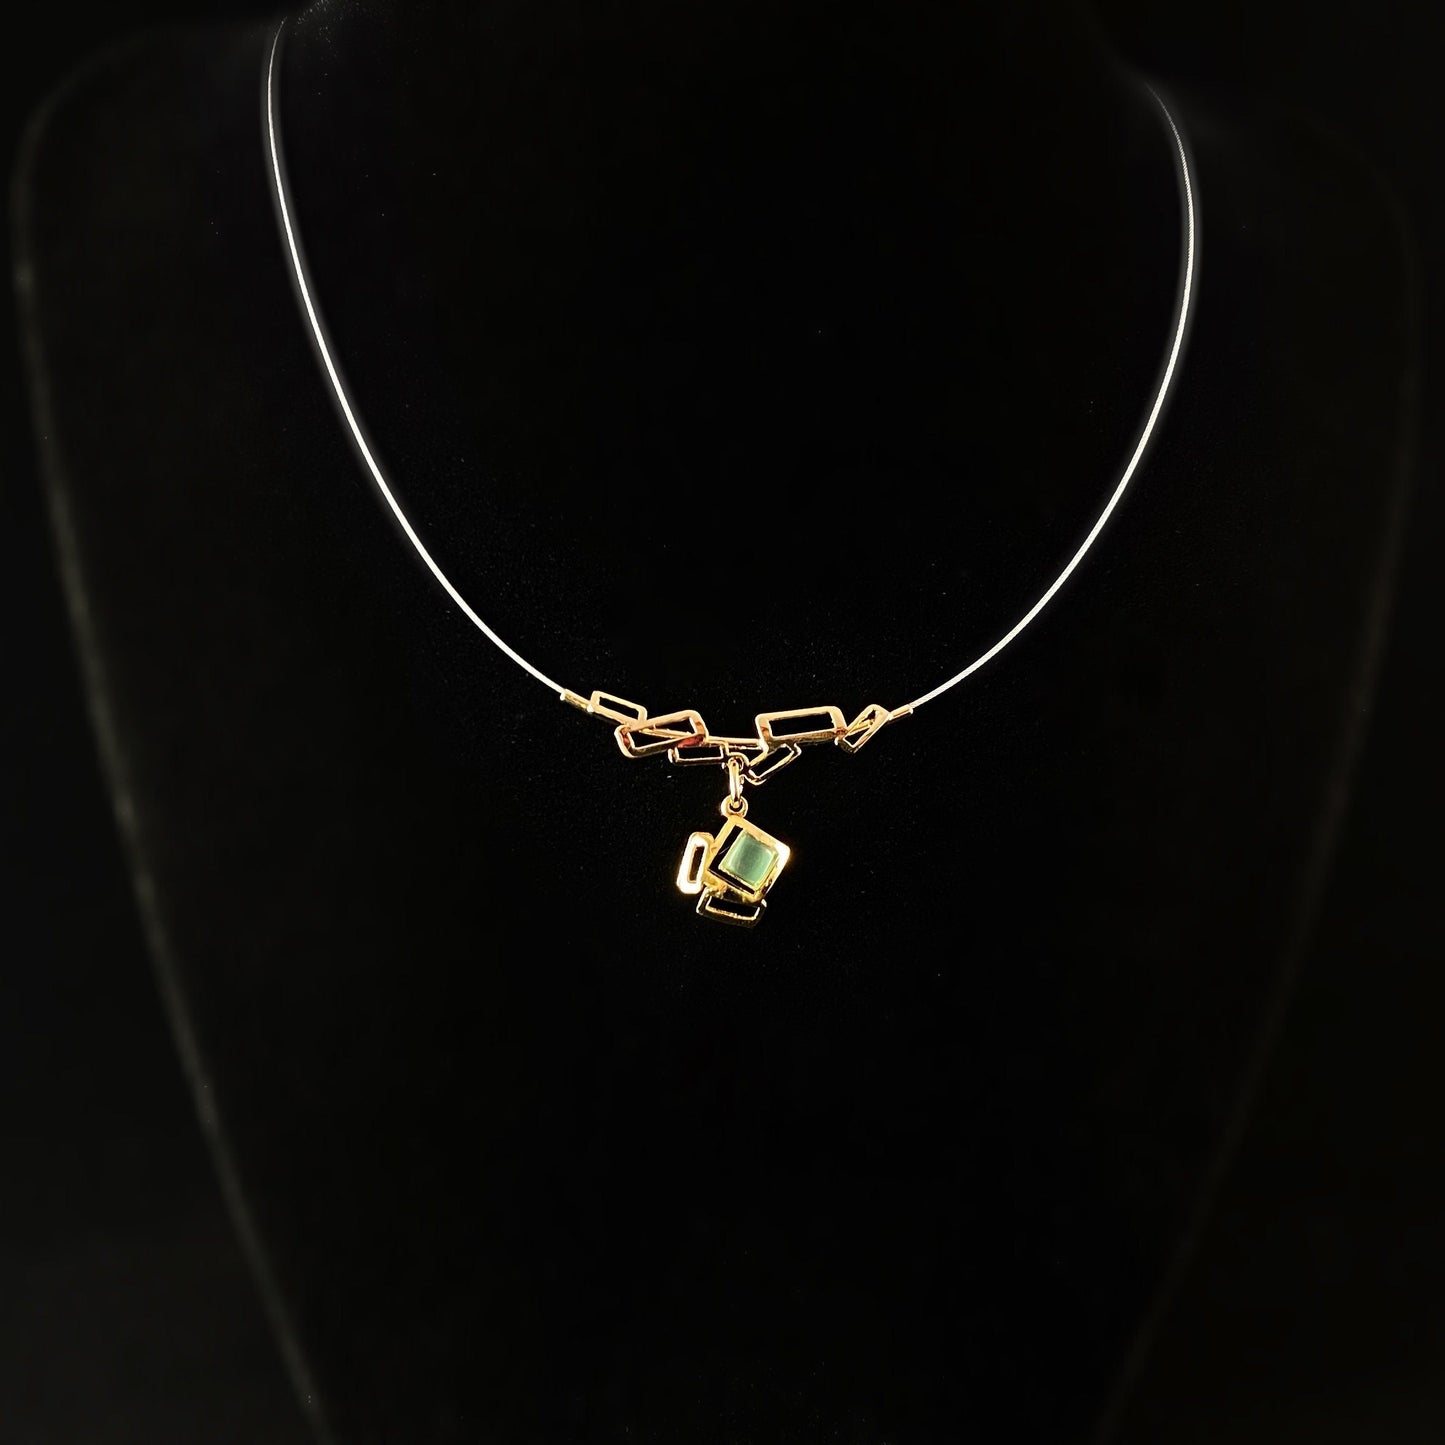 Lightweight Handmade Geometric Aluminum Necklace, Small Green/Gold Cubes